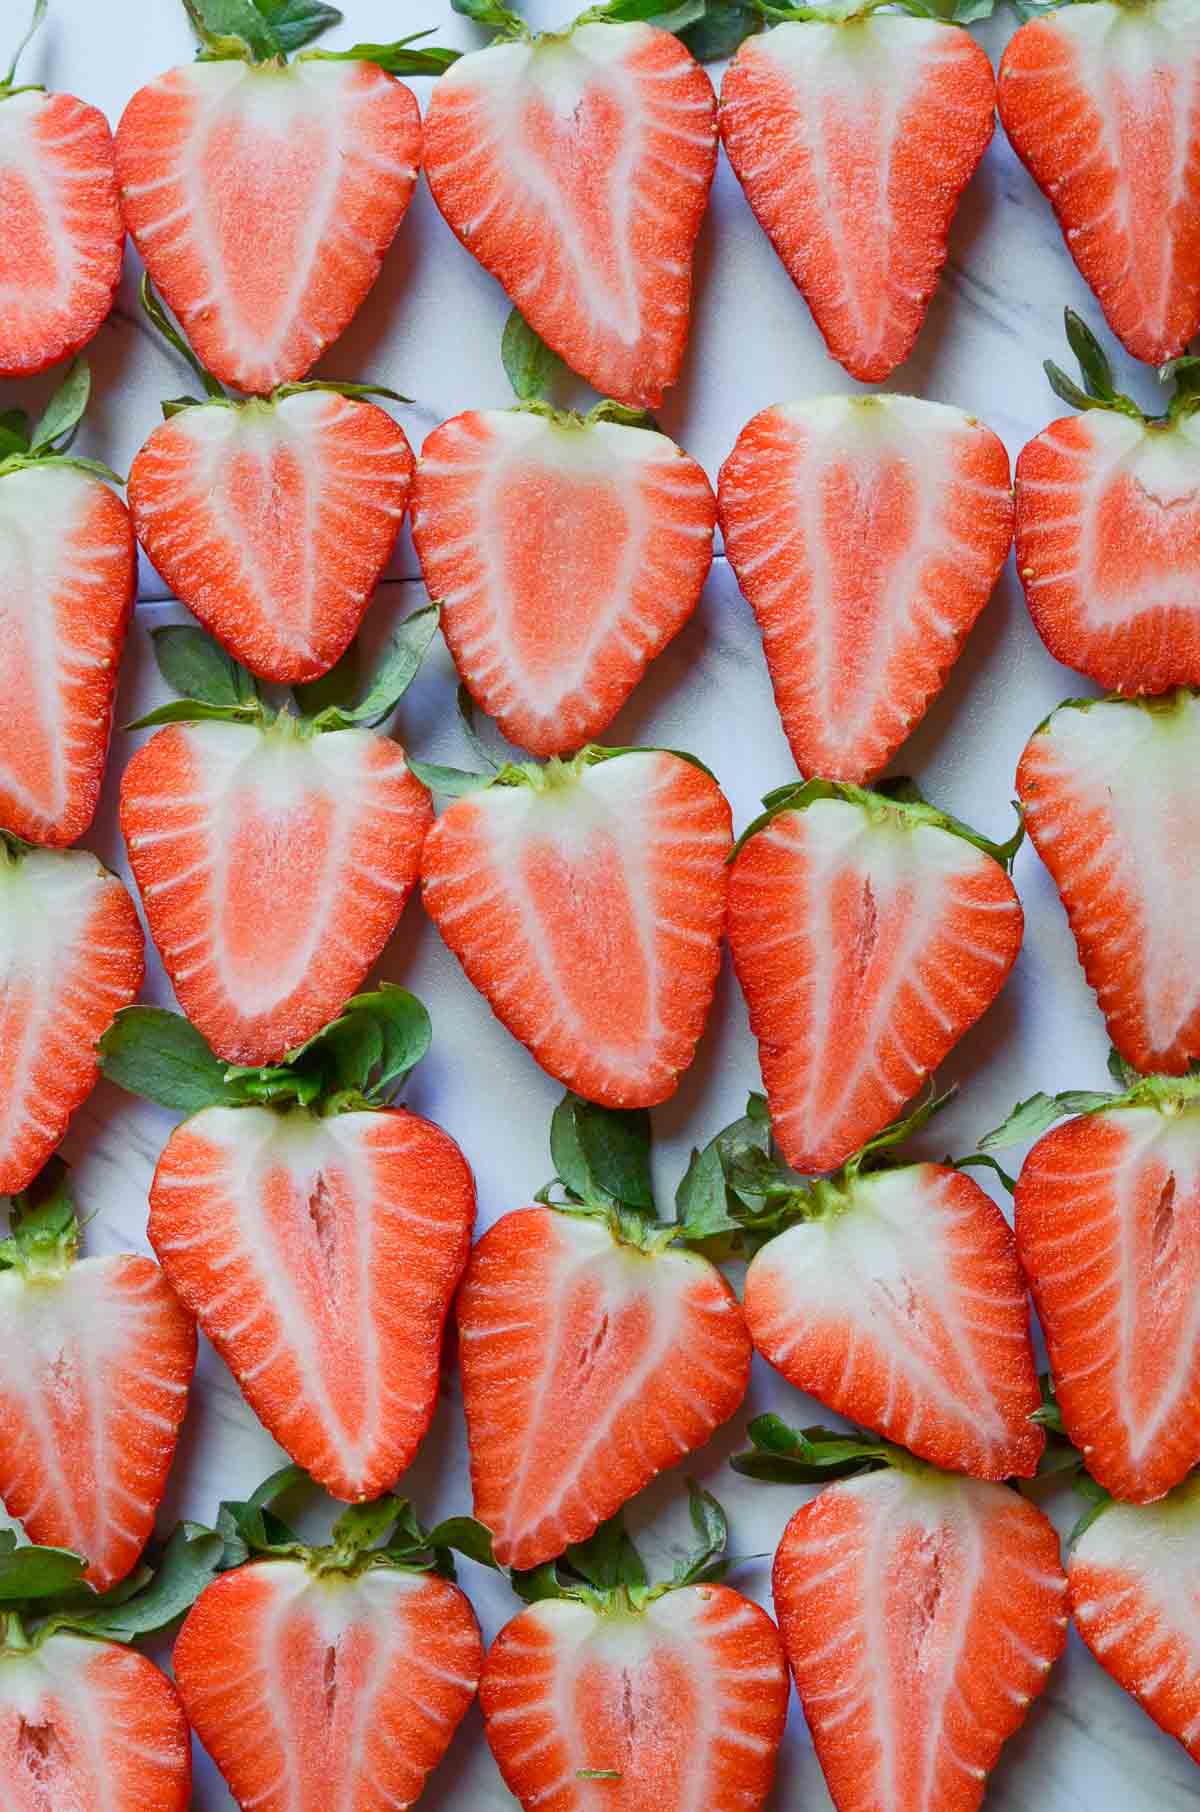 sliced strawberries kept on white board.